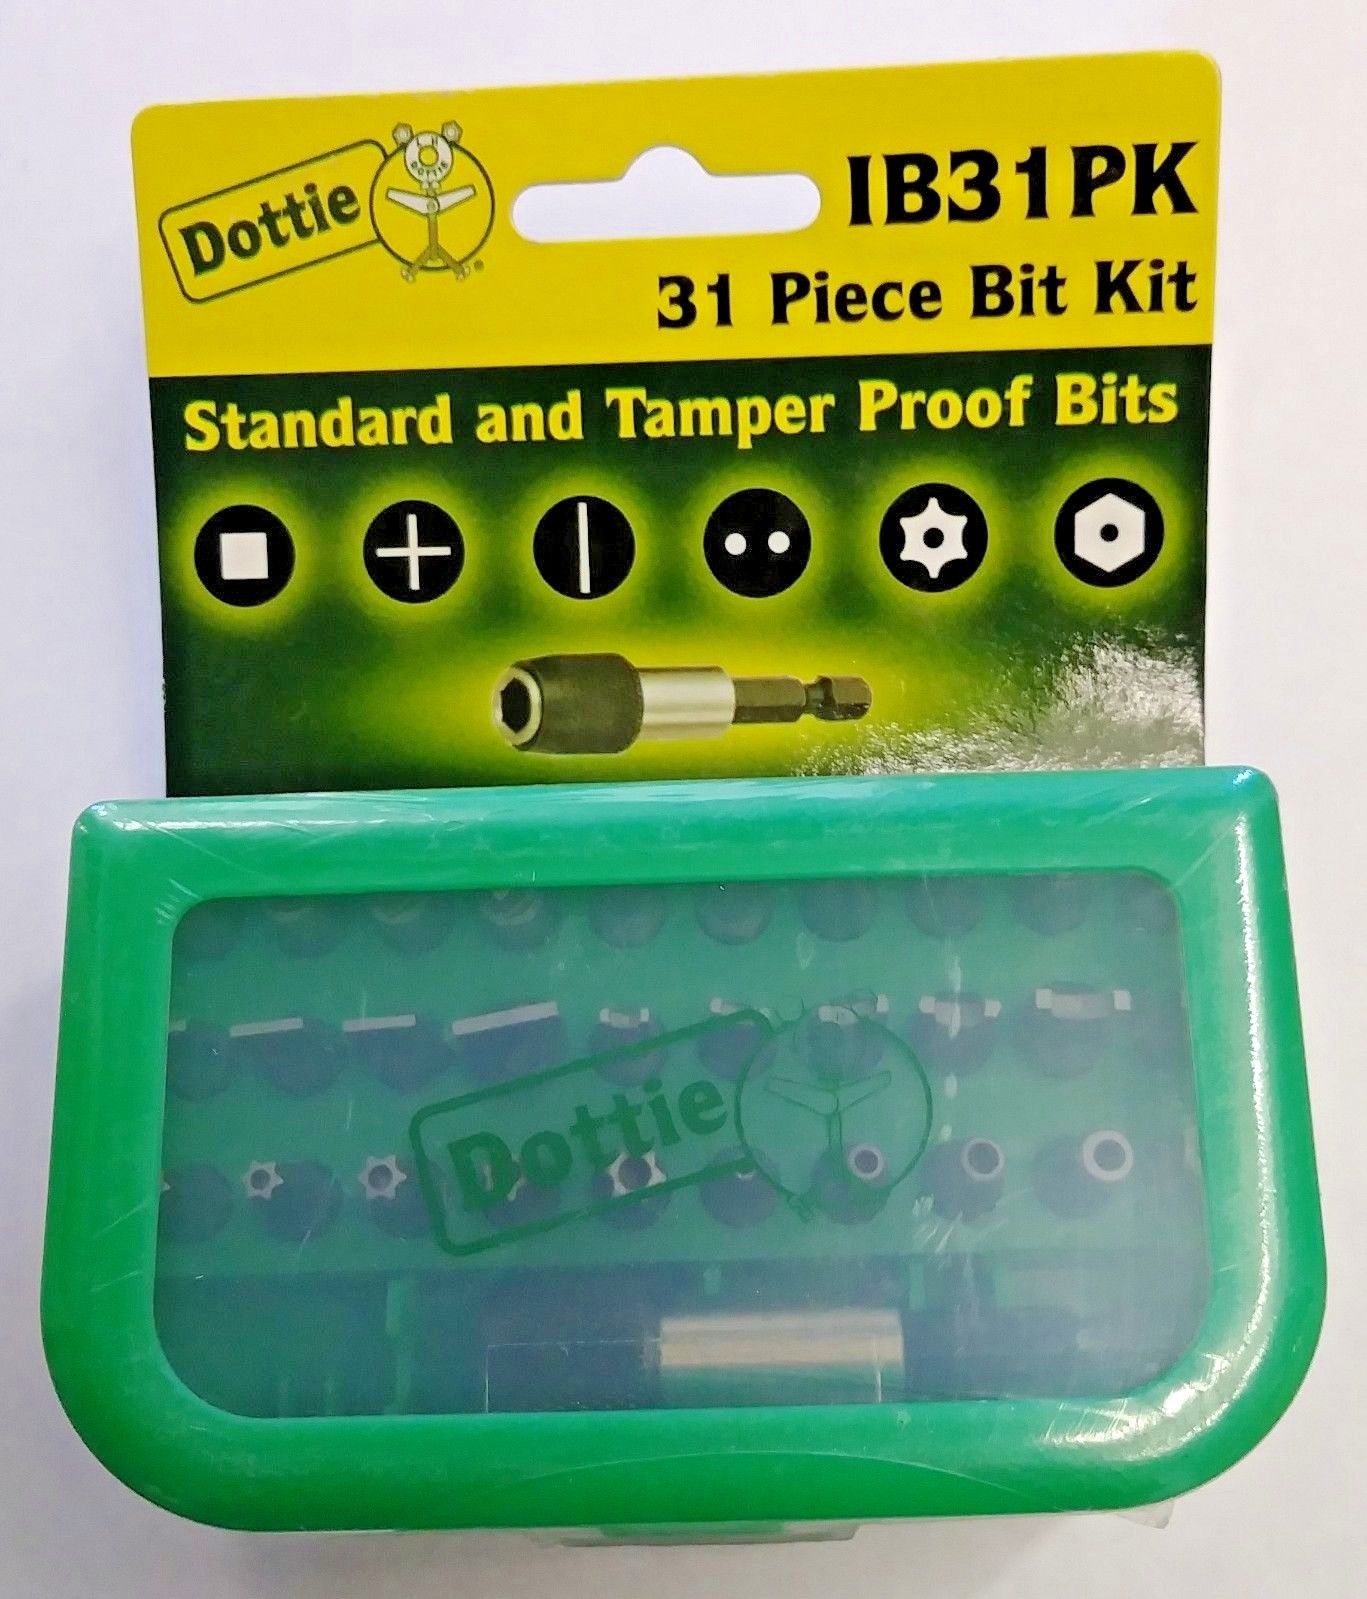 Dottie IB31PK 31 Piece Standard and Tamper Proof Bits (Kit)